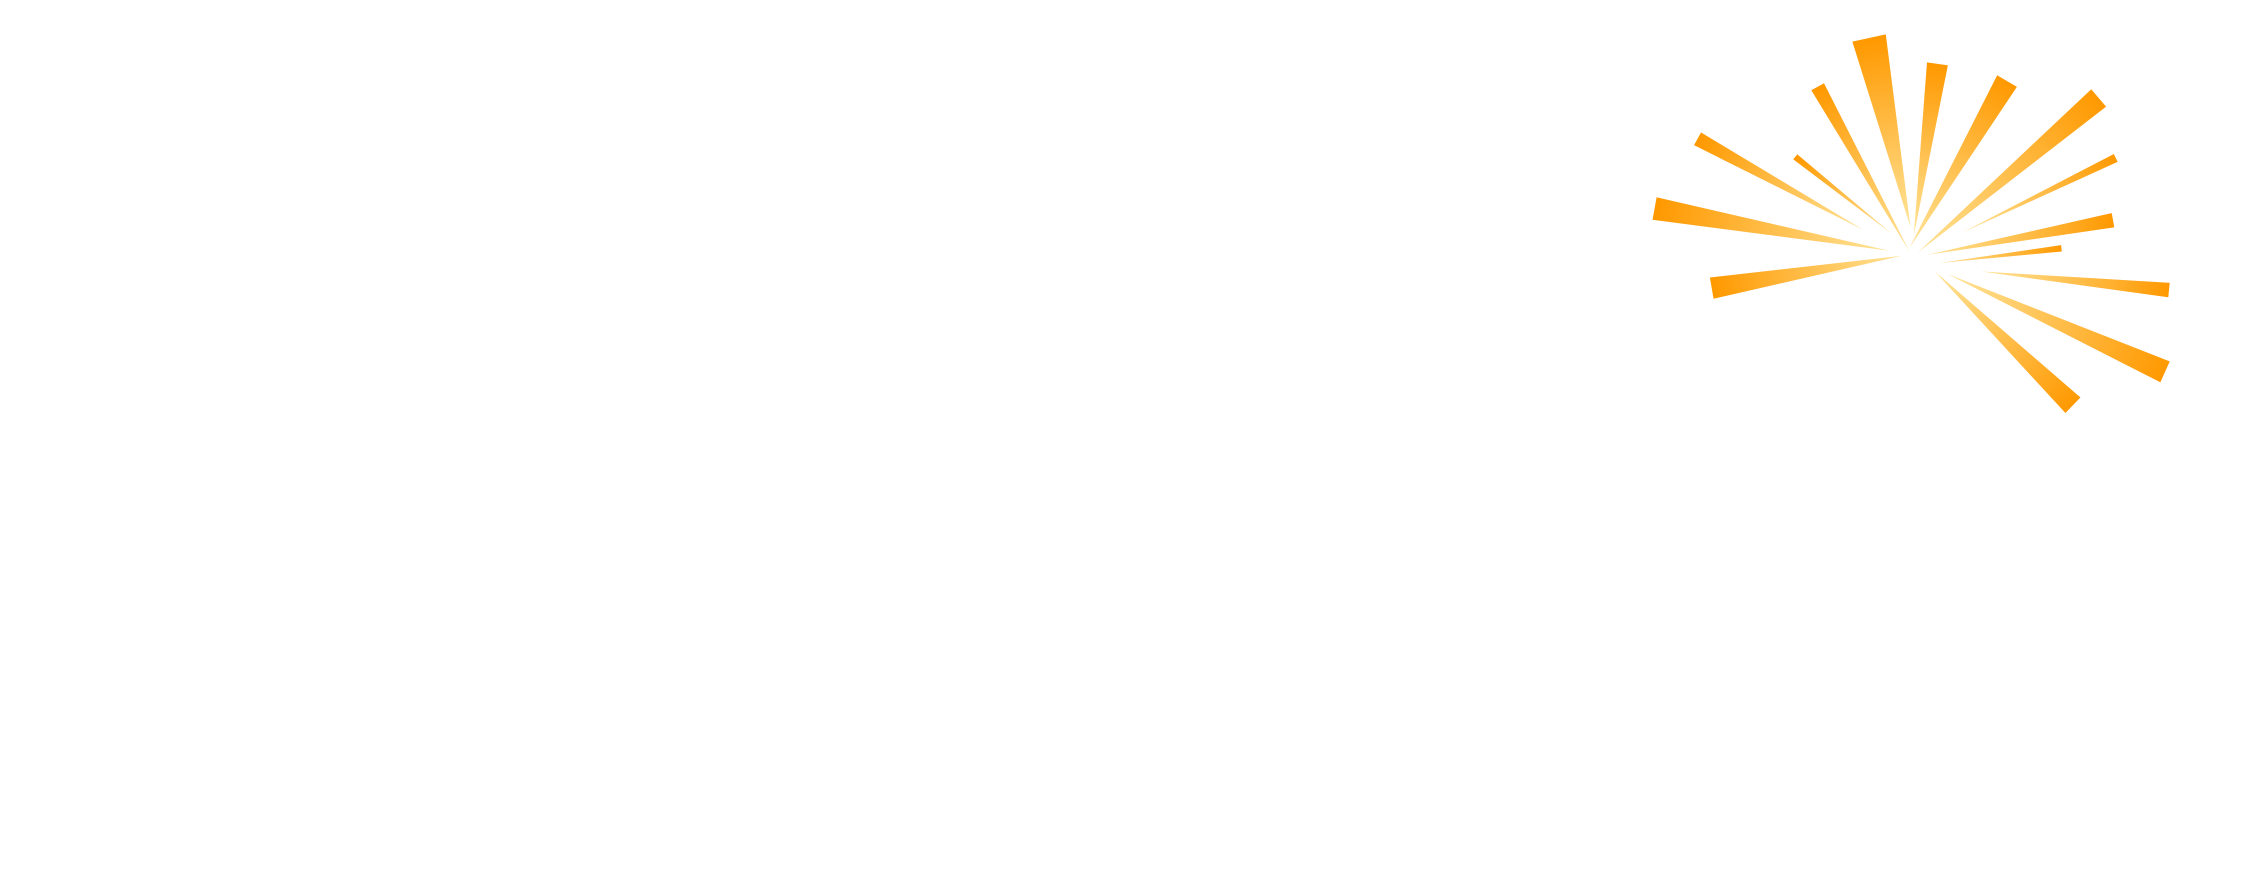 Firecracker Agency